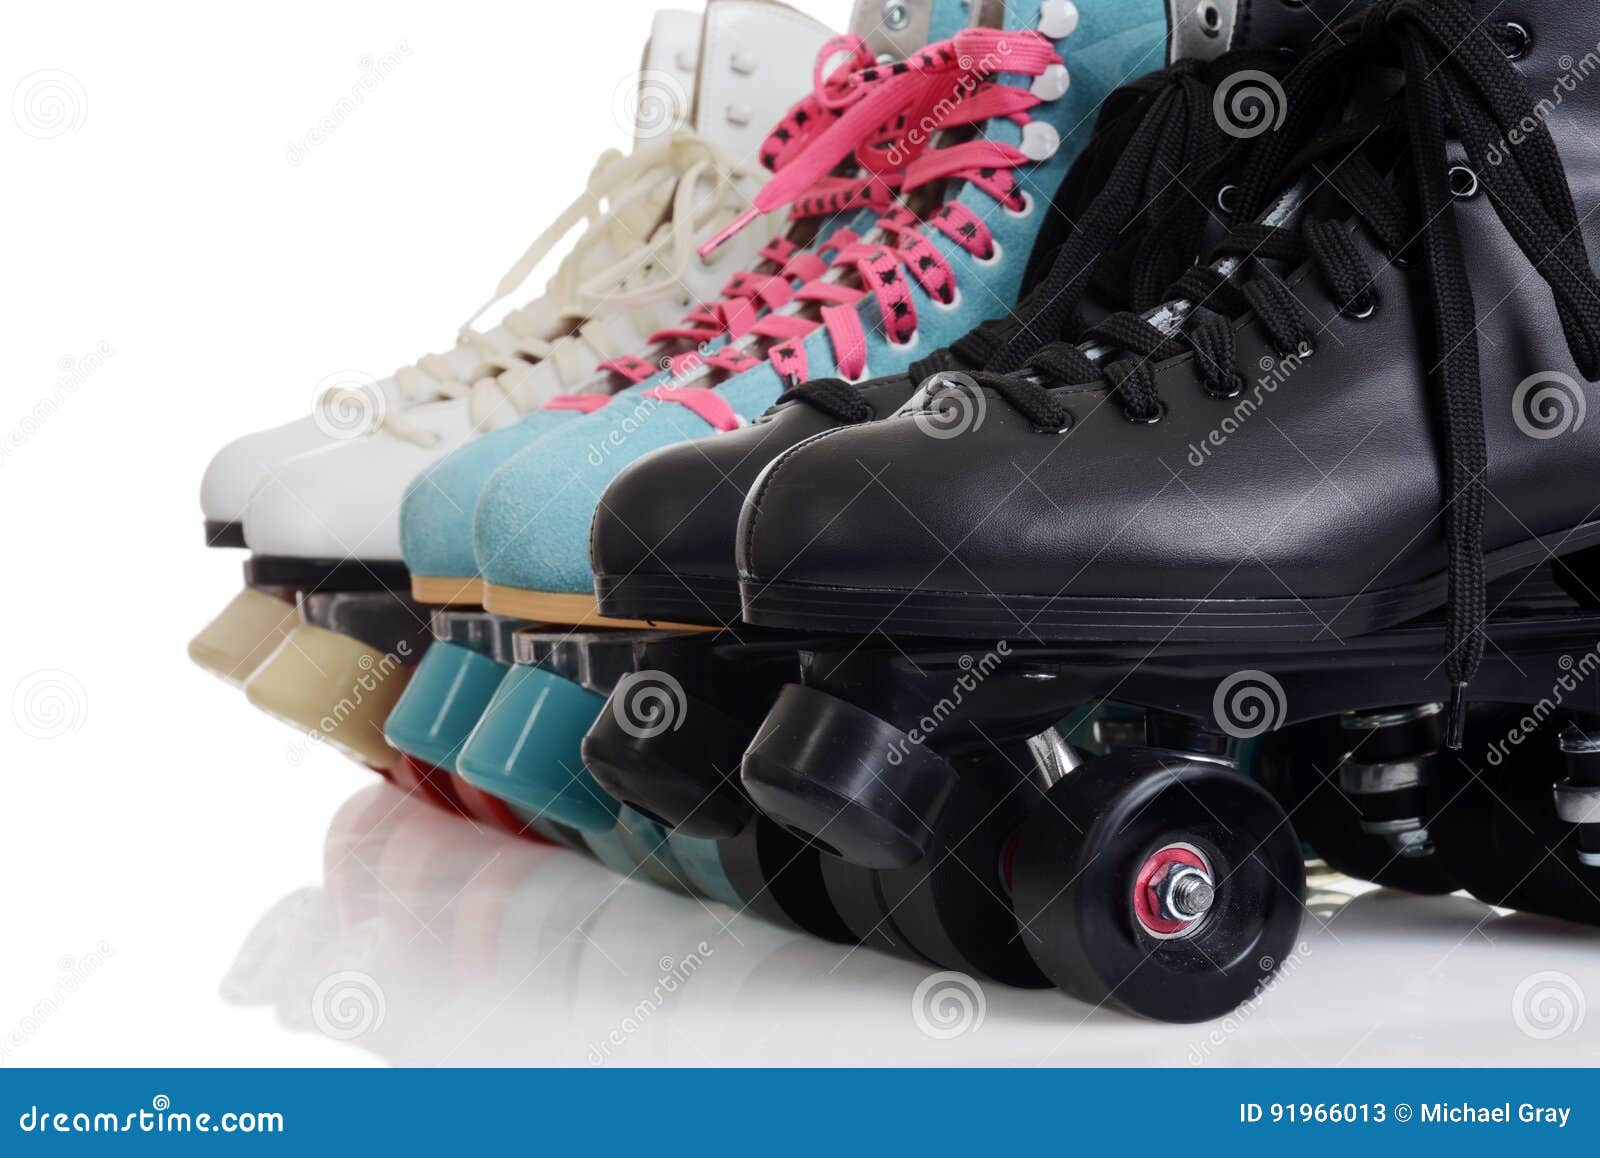 closeup row of quad roller skates